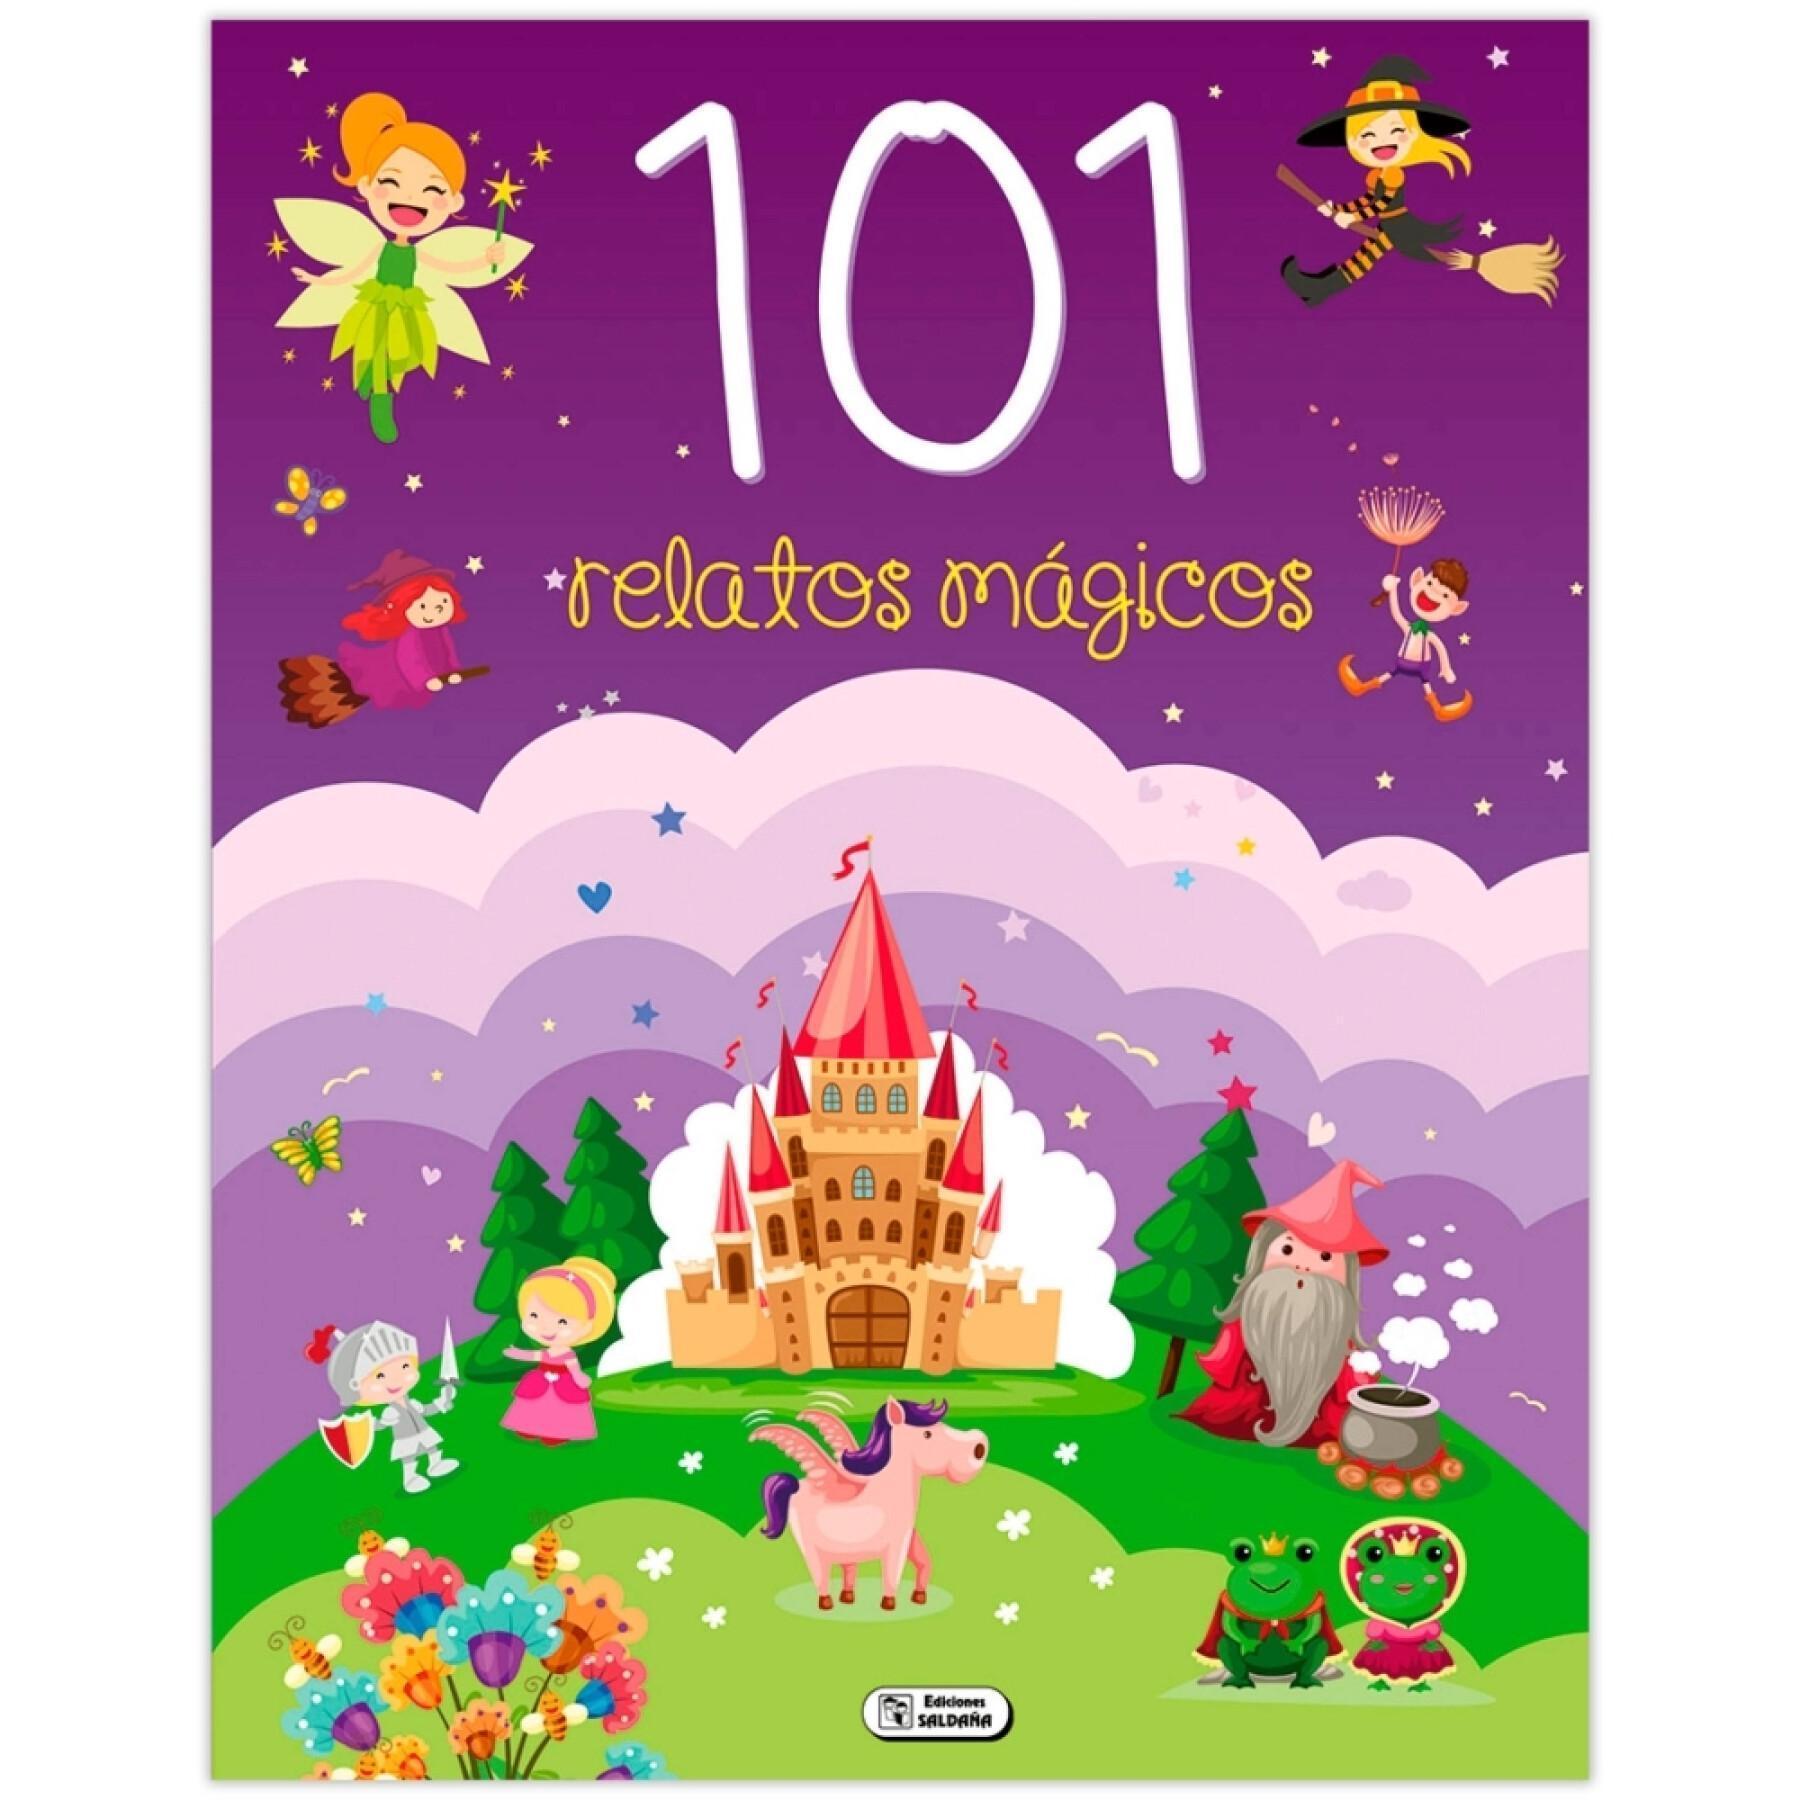 Book 109 pages 101 magical stories Saldana